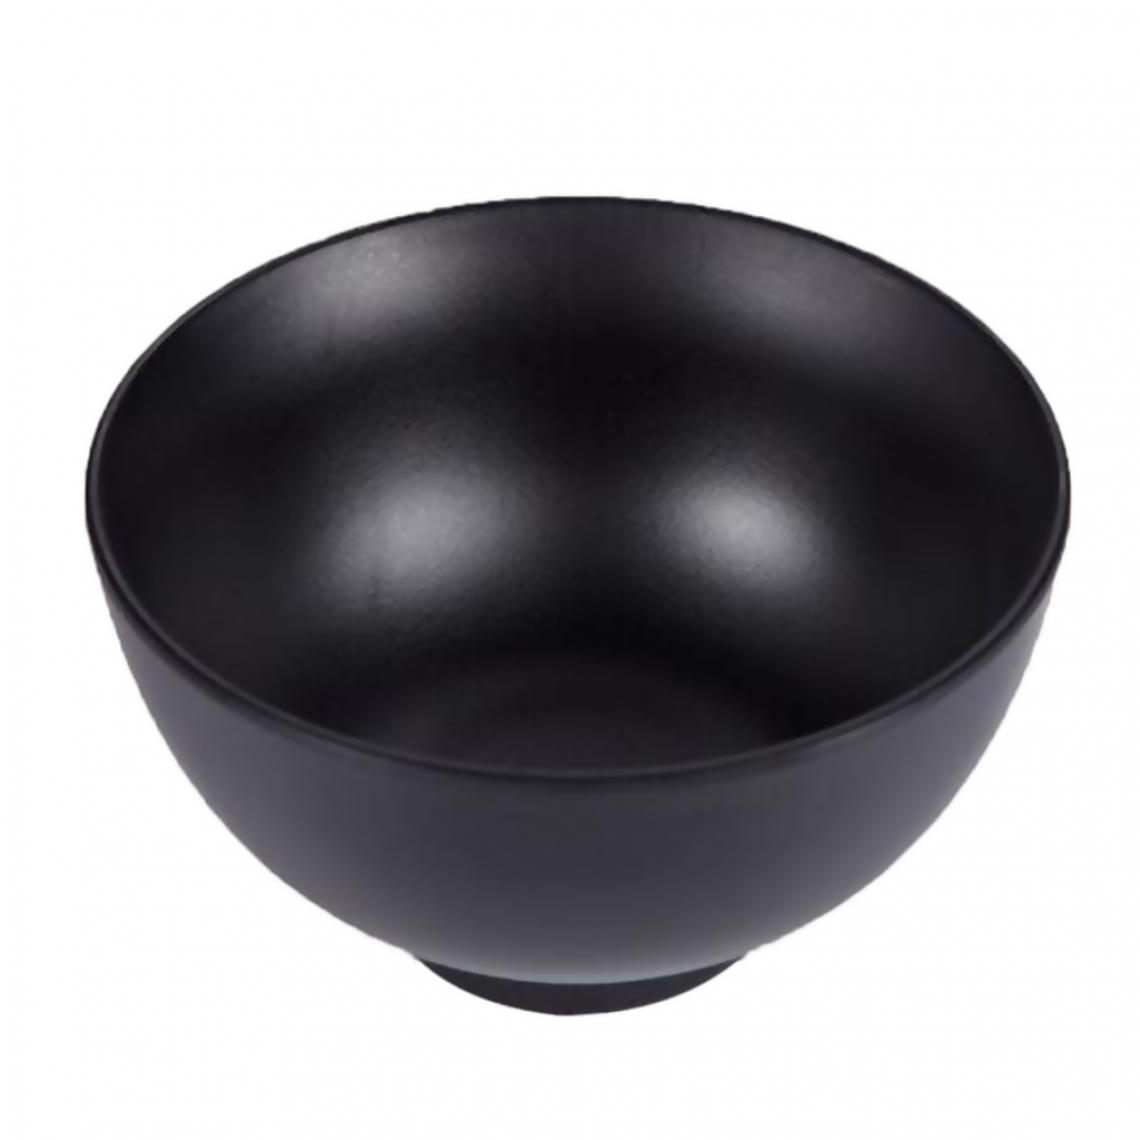 marque generique - Bols noirs avec qualité alimentaire pour soupe Riz Farine d'avoine # 7 - Kitchenette